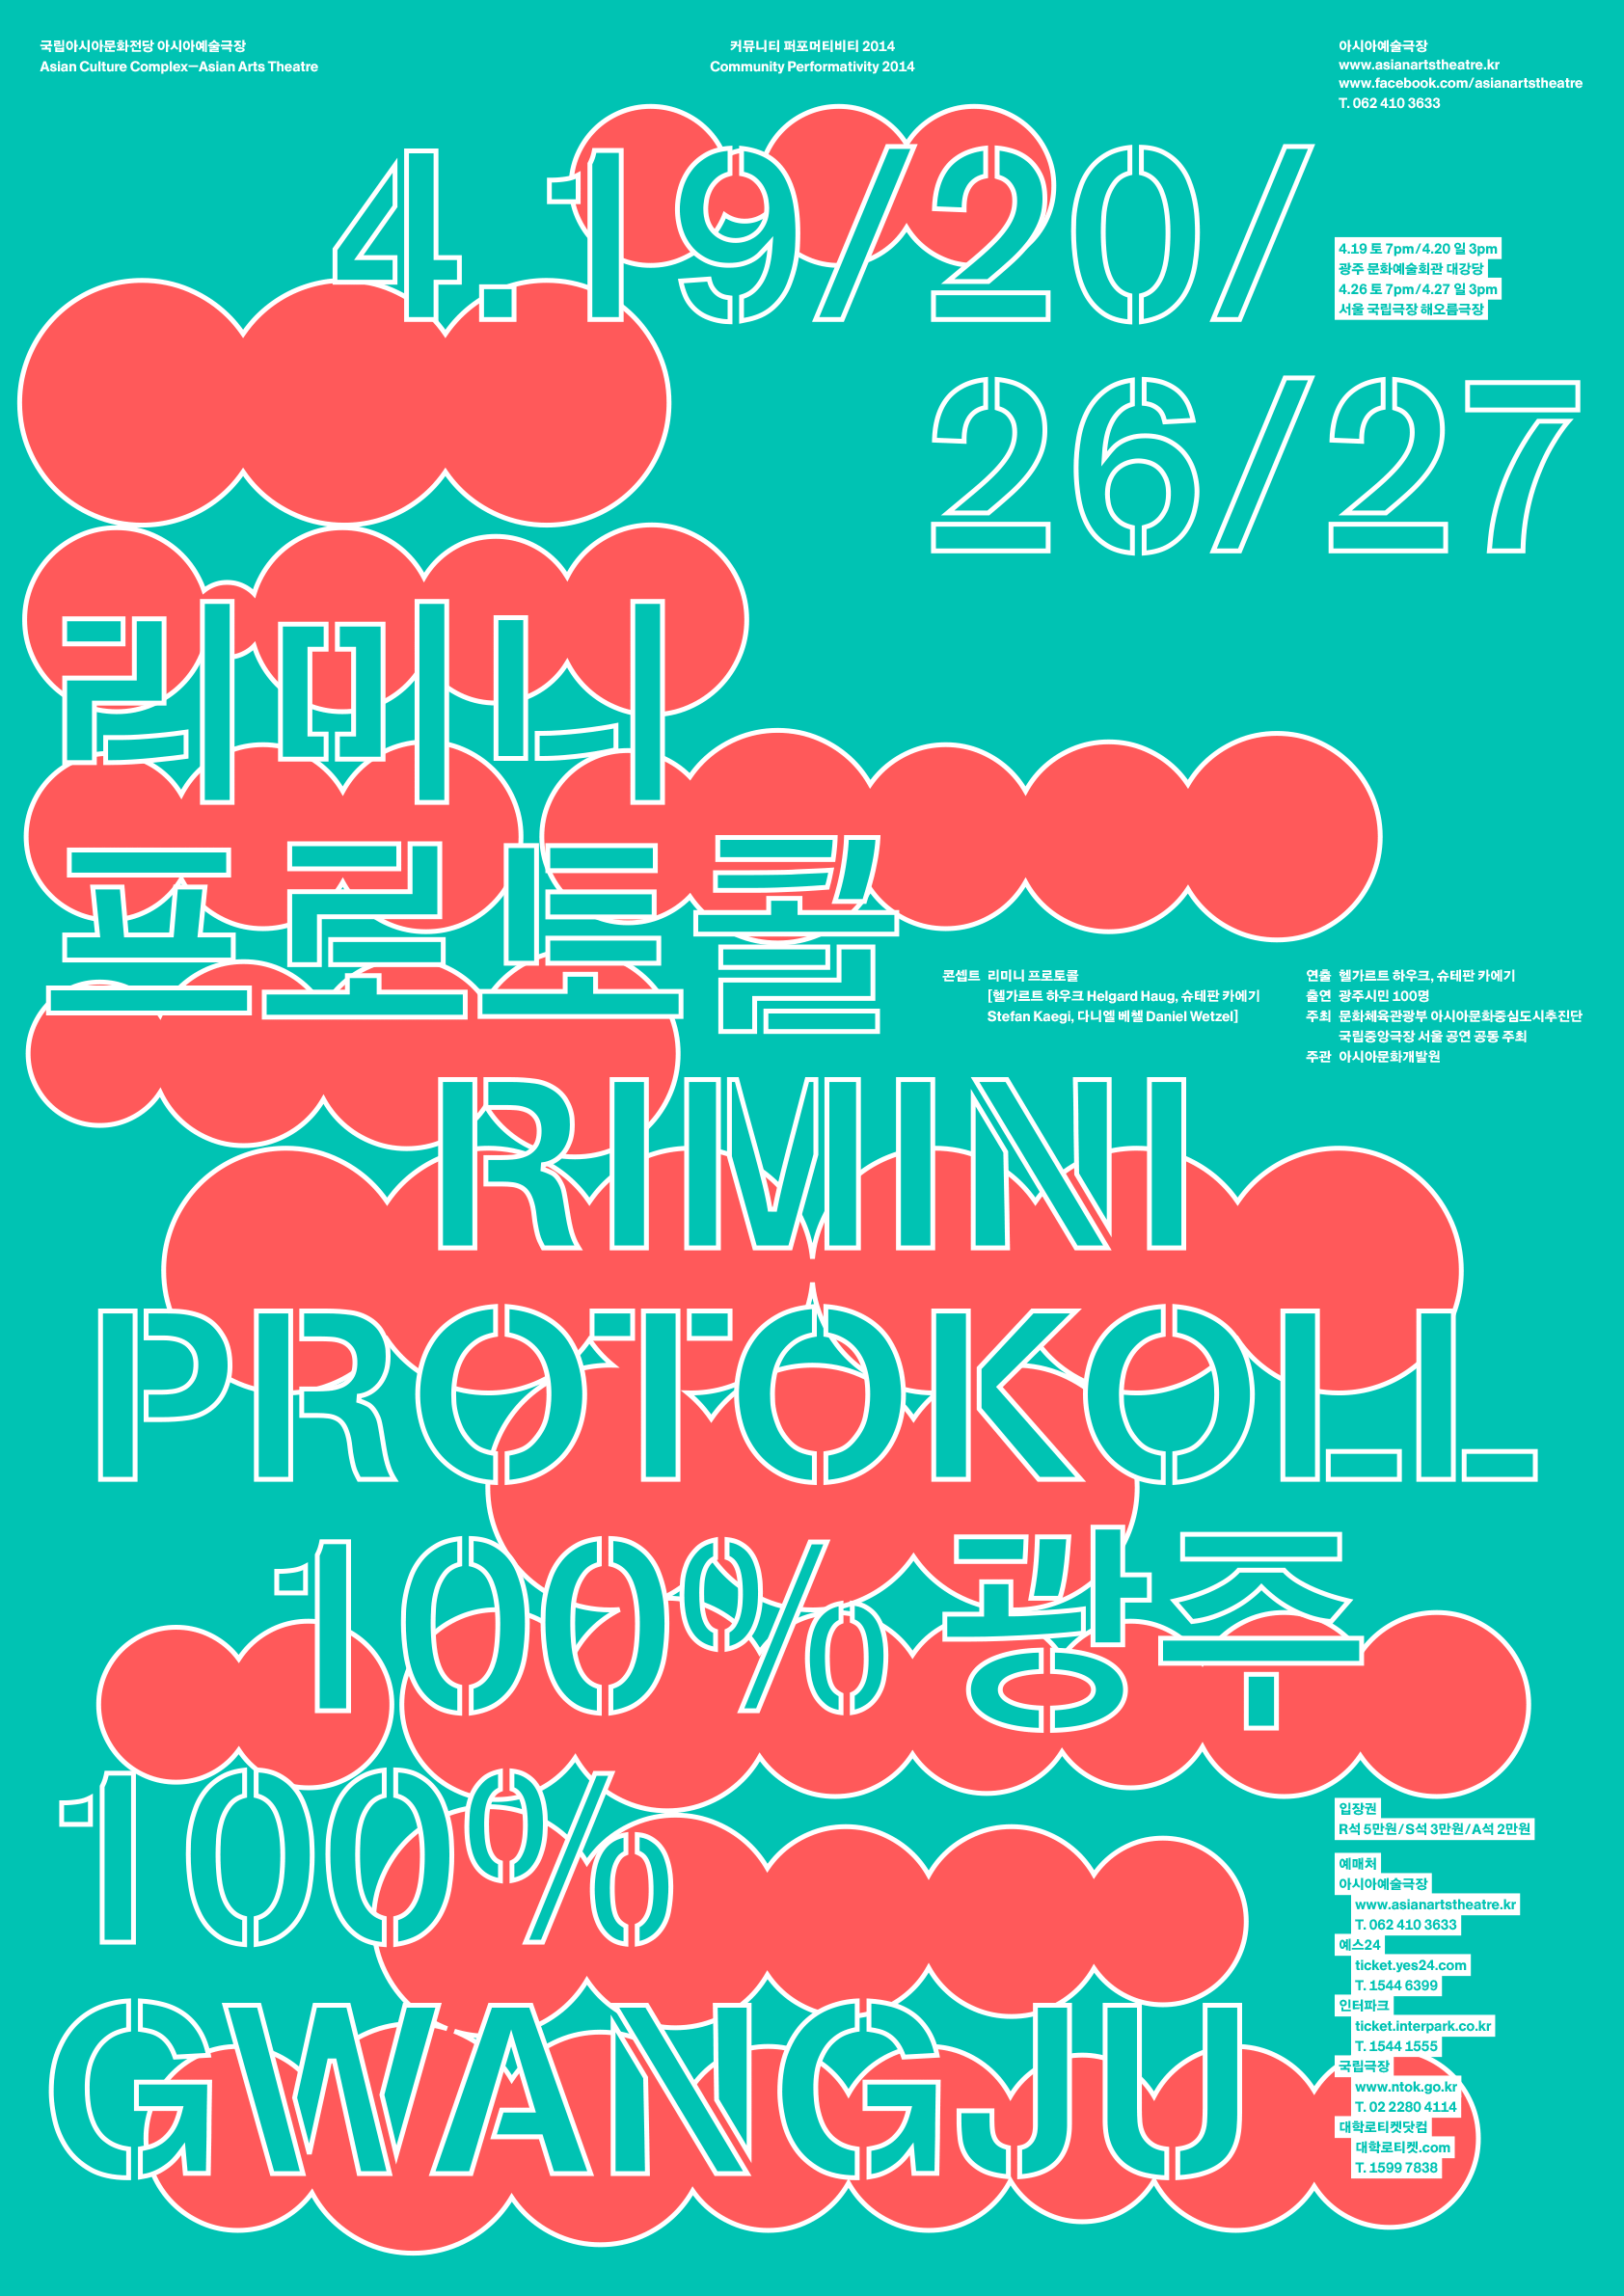 100% Gwangju: Poster